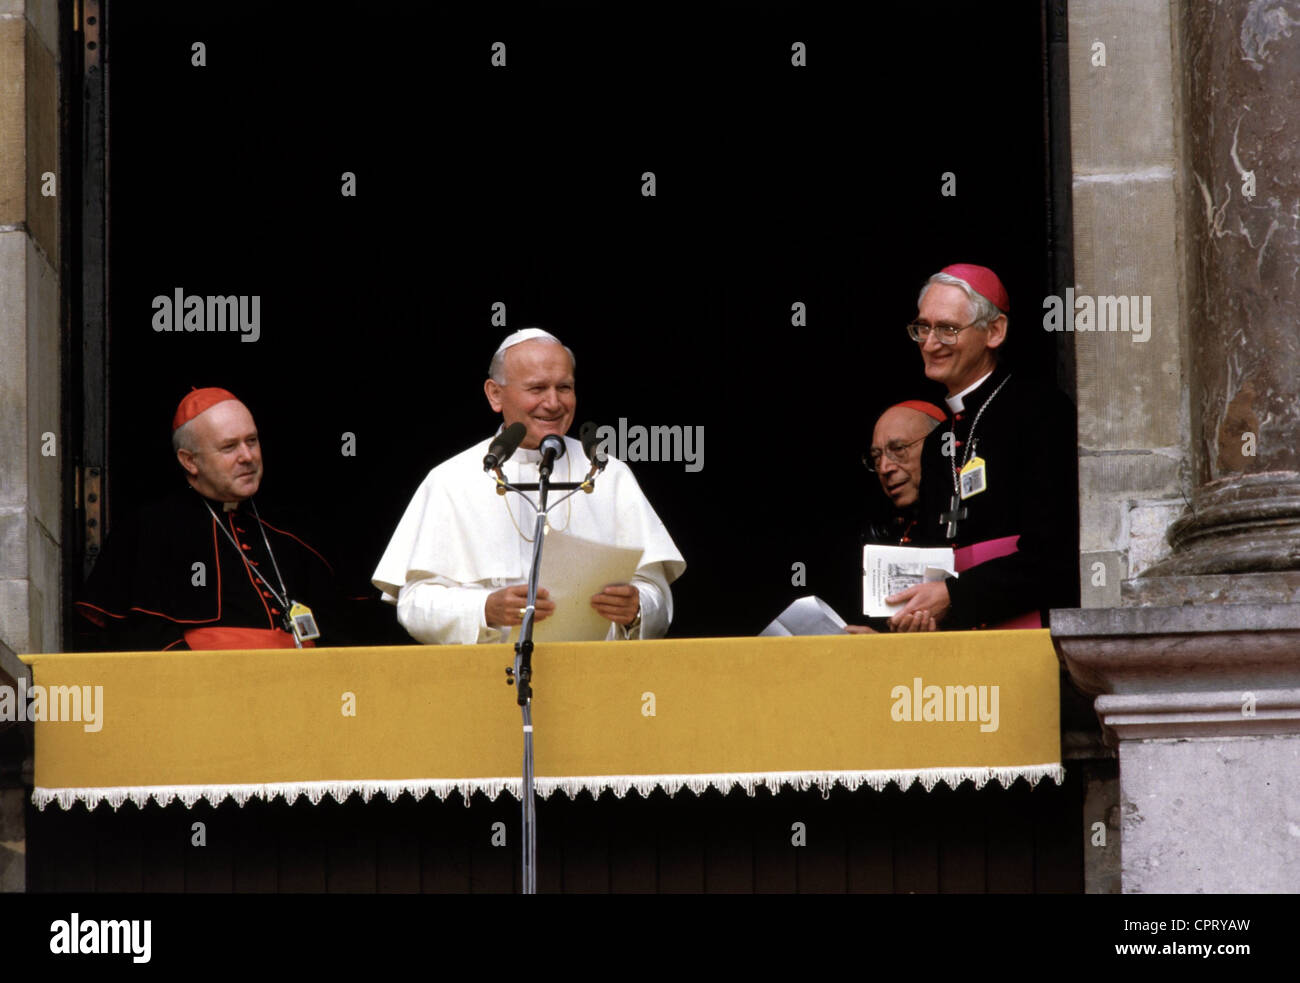 Jean-Paul II (Karol Wojtyla), 18.5.1920 - 2.4.2005, pape 1978 - 2005, en visite dans les pays du Benelux, 11. - 21.5.1985, demi-longueur, à Anvers, 17.5.1985, prononcera un discours avec le Cardinal Danneels et le Cardinal Casaroli, Banque D'Images